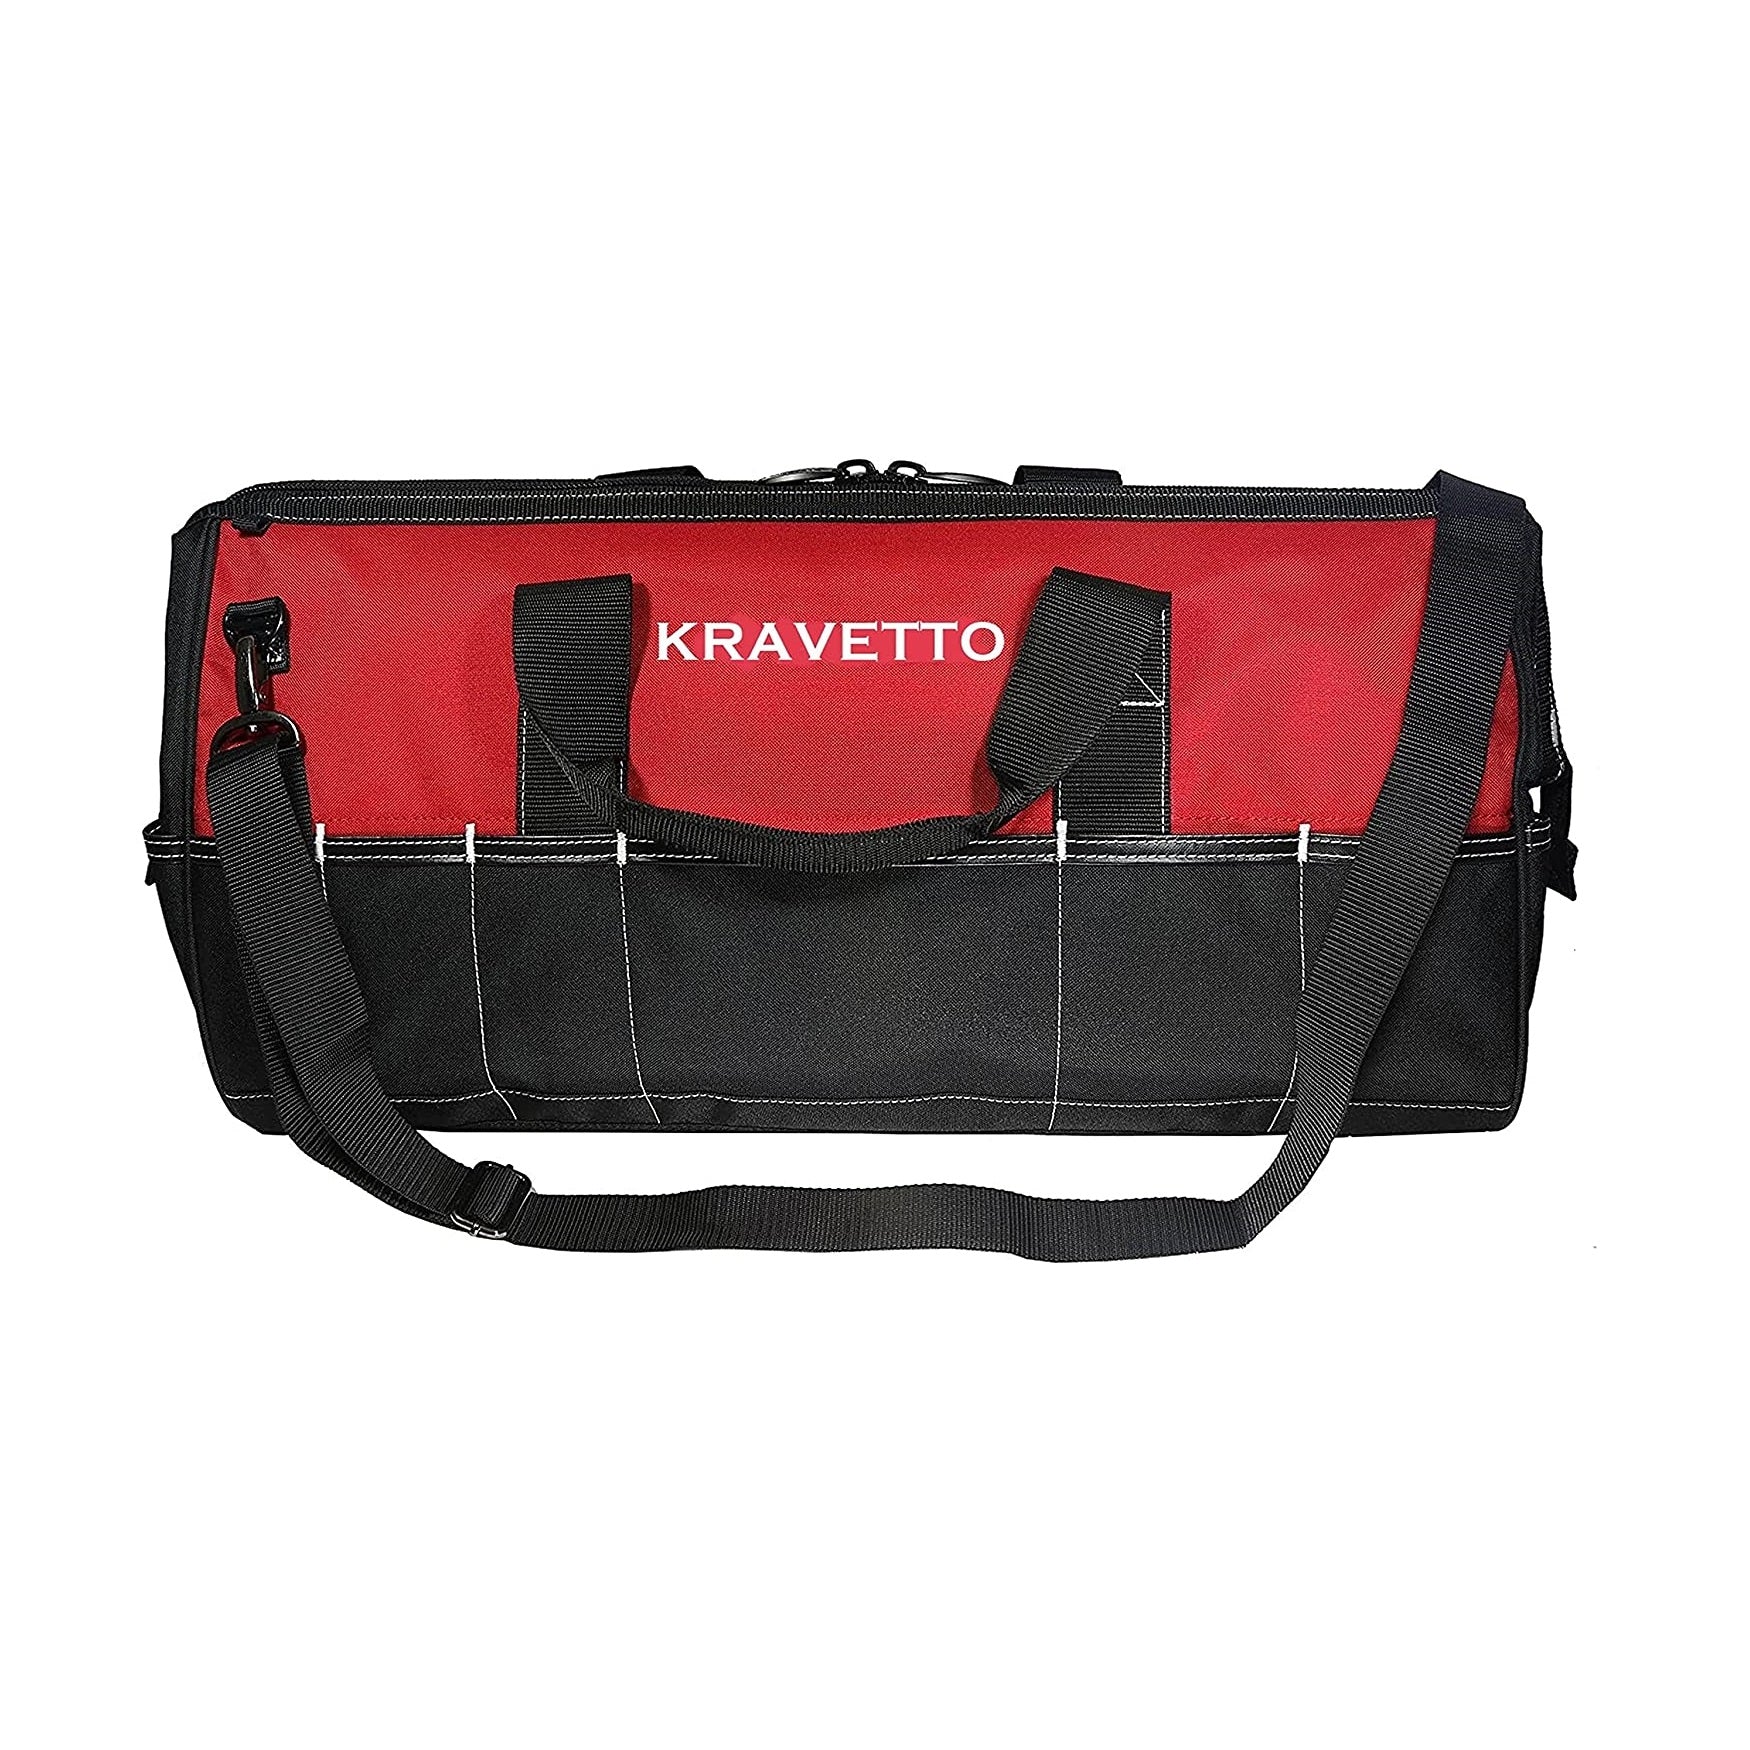 Kravetto Multipurpose Nylon Tool Bag